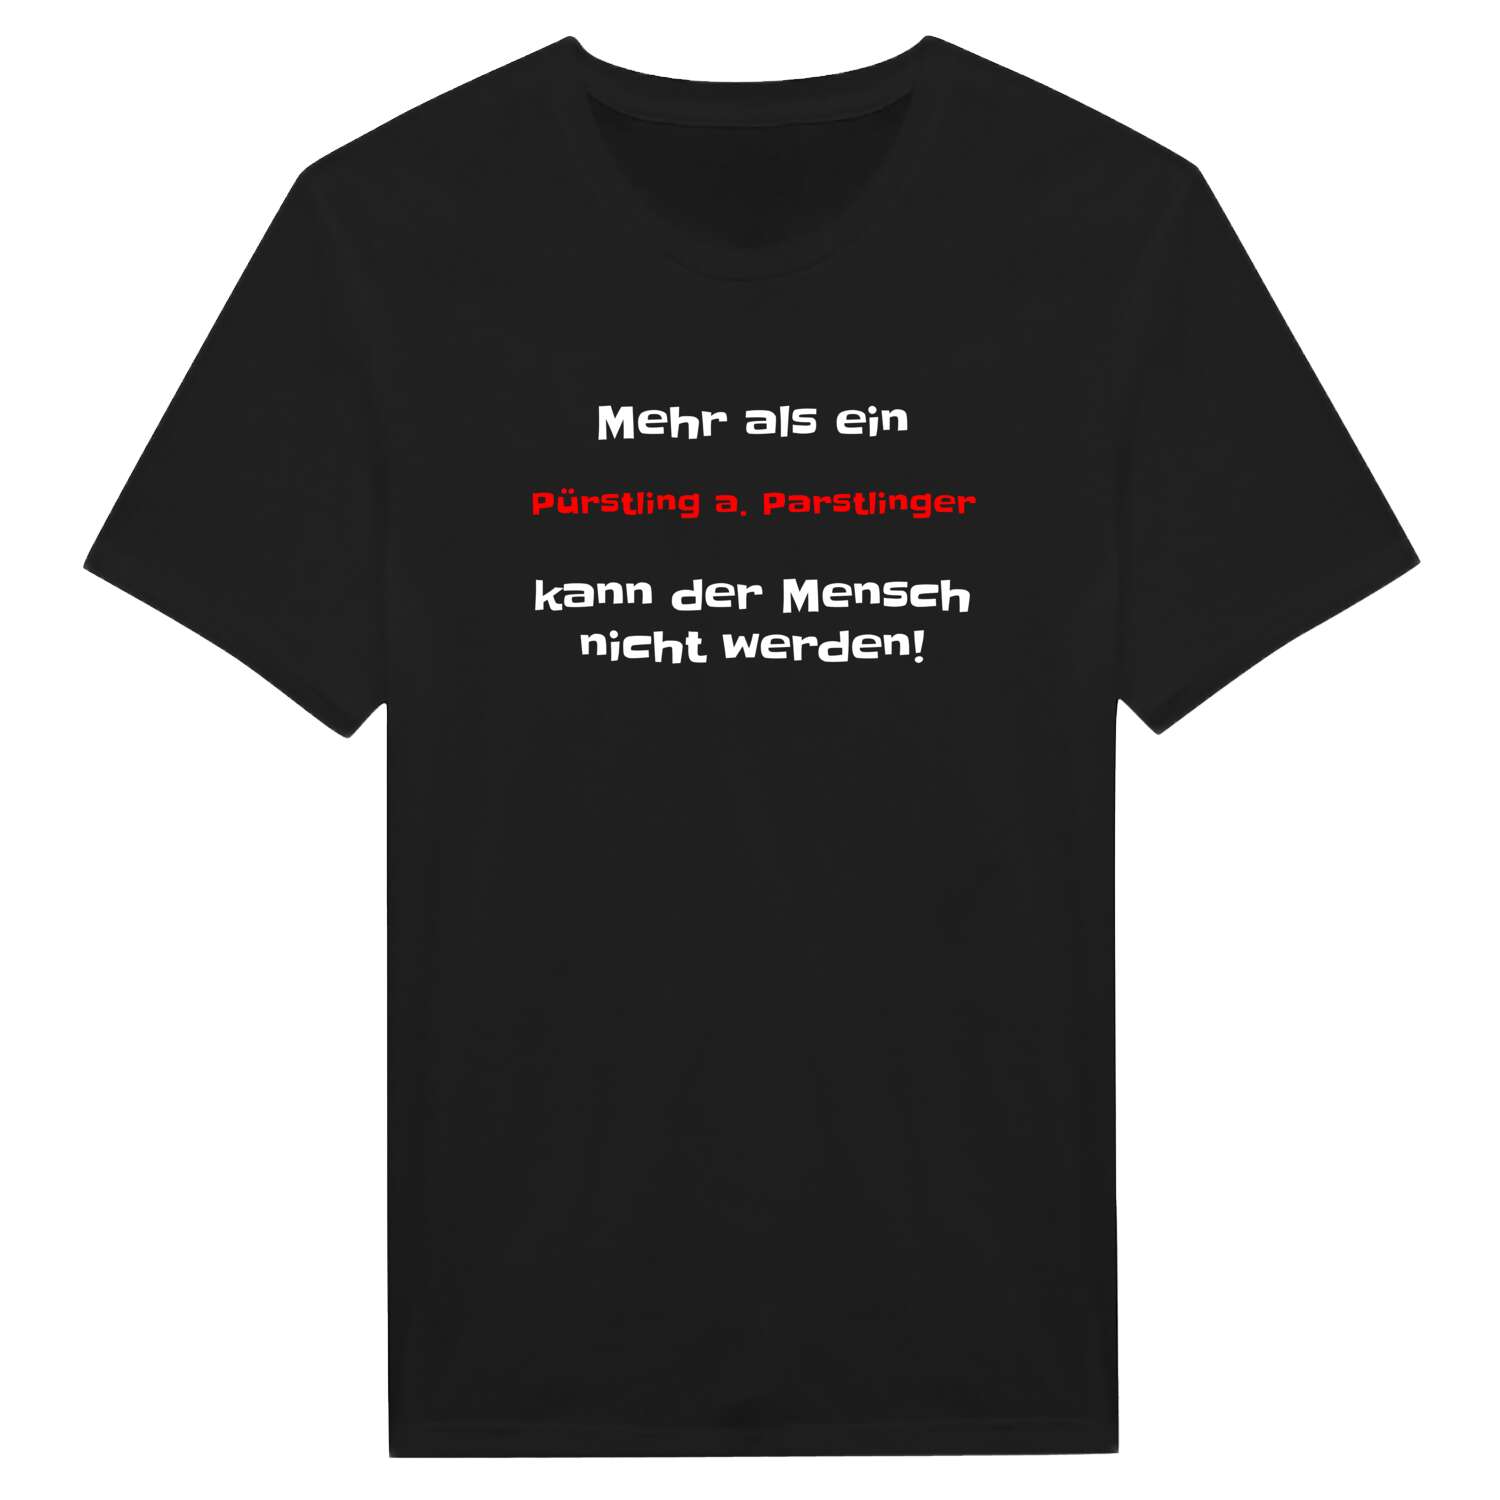 Pürstling a. Parstling T-Shirt »Mehr als ein«